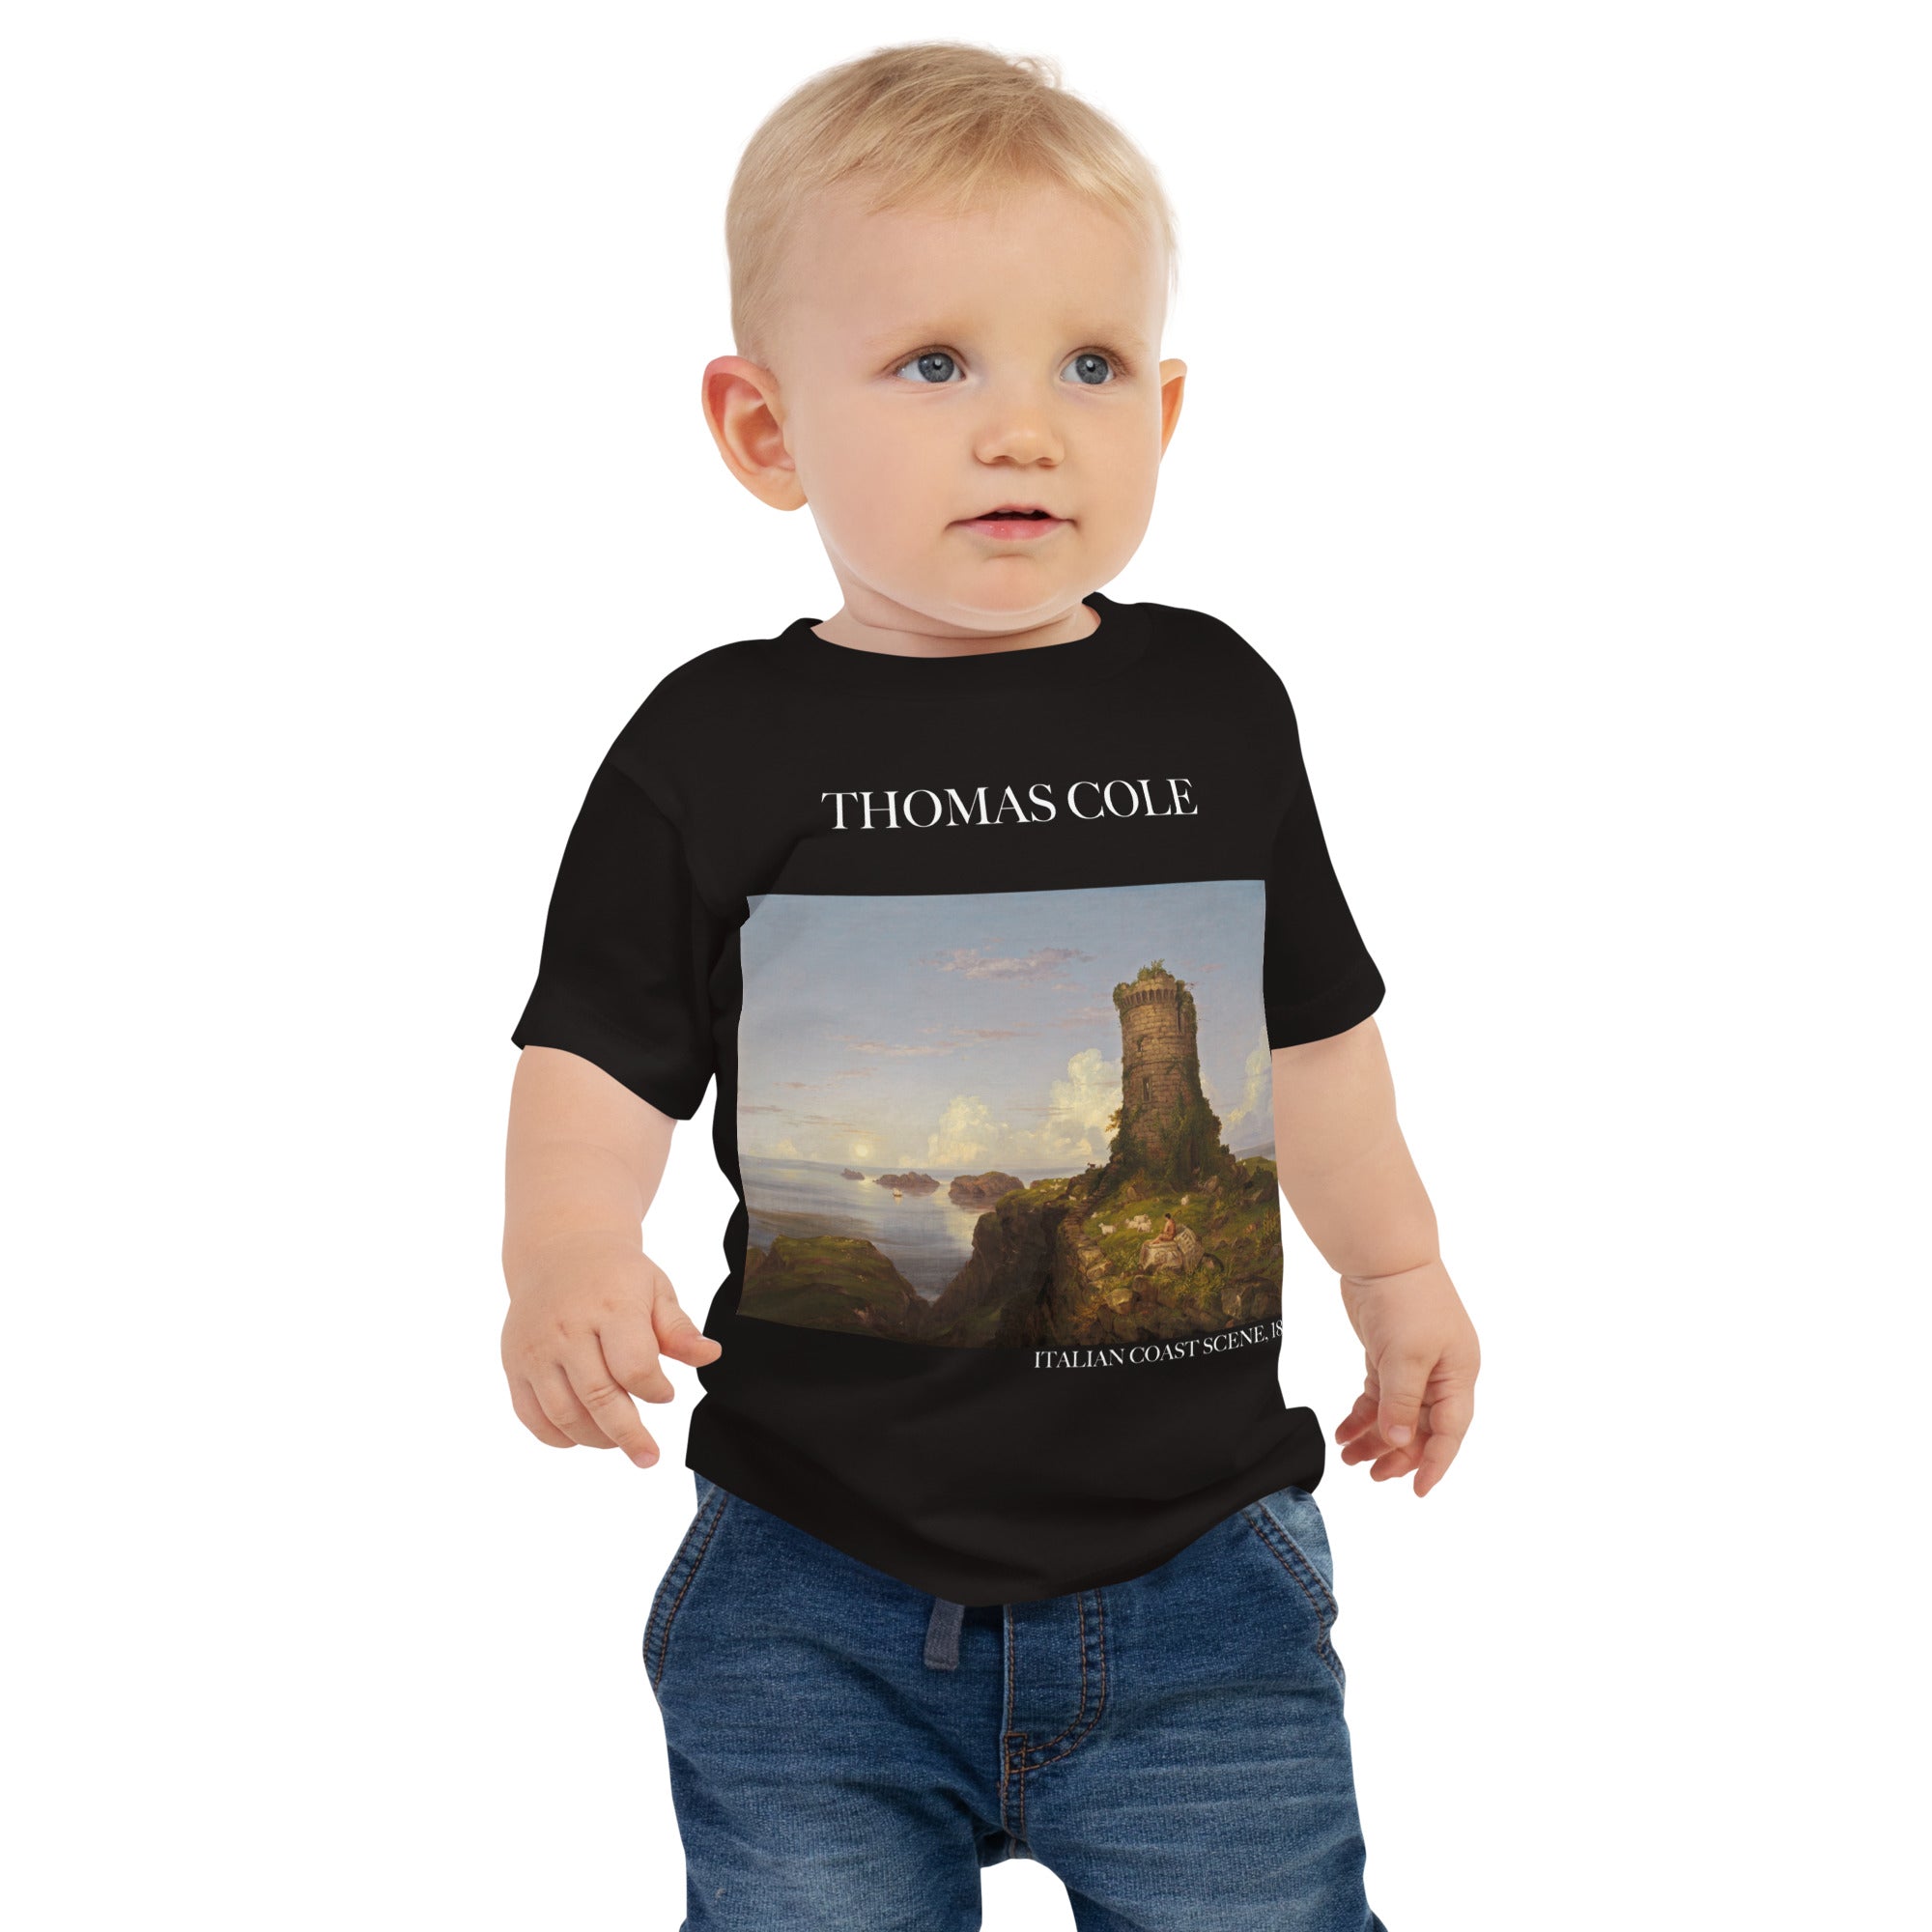 Thomas Cole „Italienische Küstenszene“, berühmtes Gemälde, Baby-T-Shirt, Premium-Kunst-T-Shirt für Babys